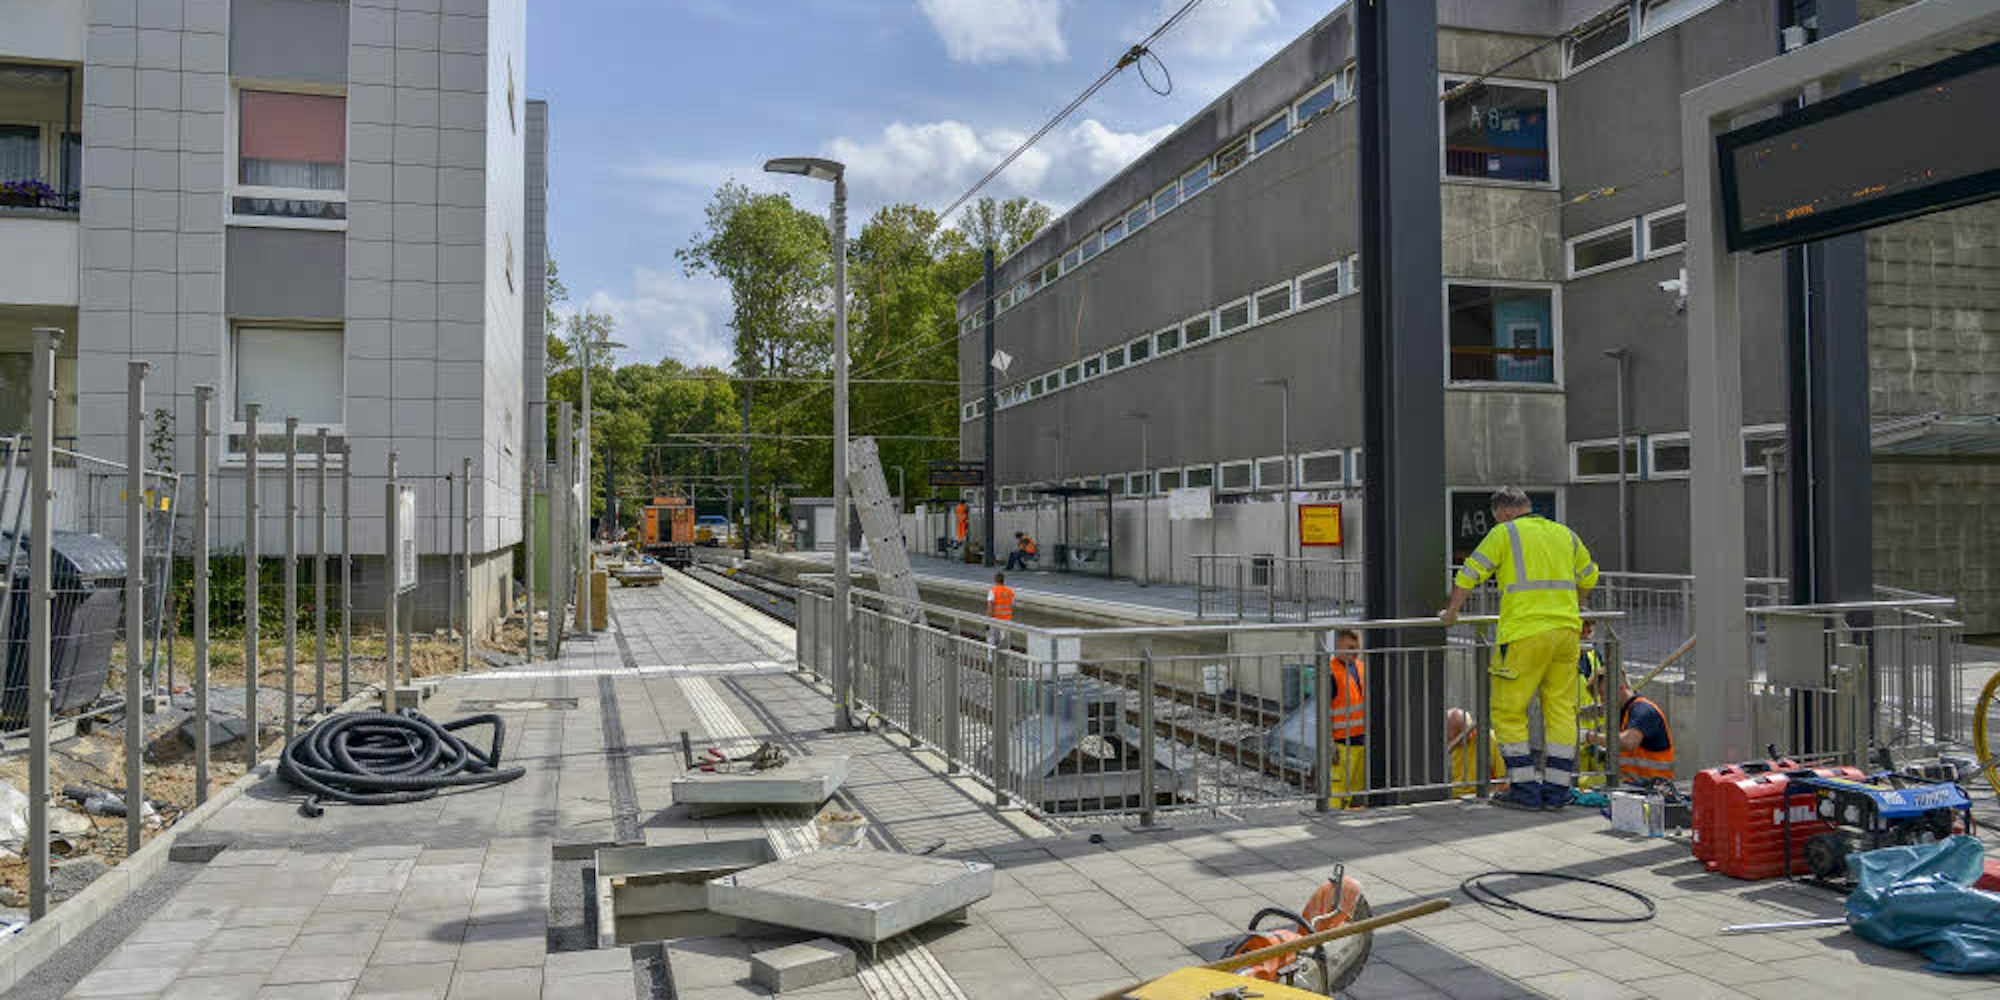 Letzte Hand wird angelegt an die neue Endhaltestelle der Linie 3: Görlinger Zentrum. Ab Montag geht der zusätzliche Streckenabschnitt in Betrieb. Rund 50 Jahre brauchte die Umsetzung.